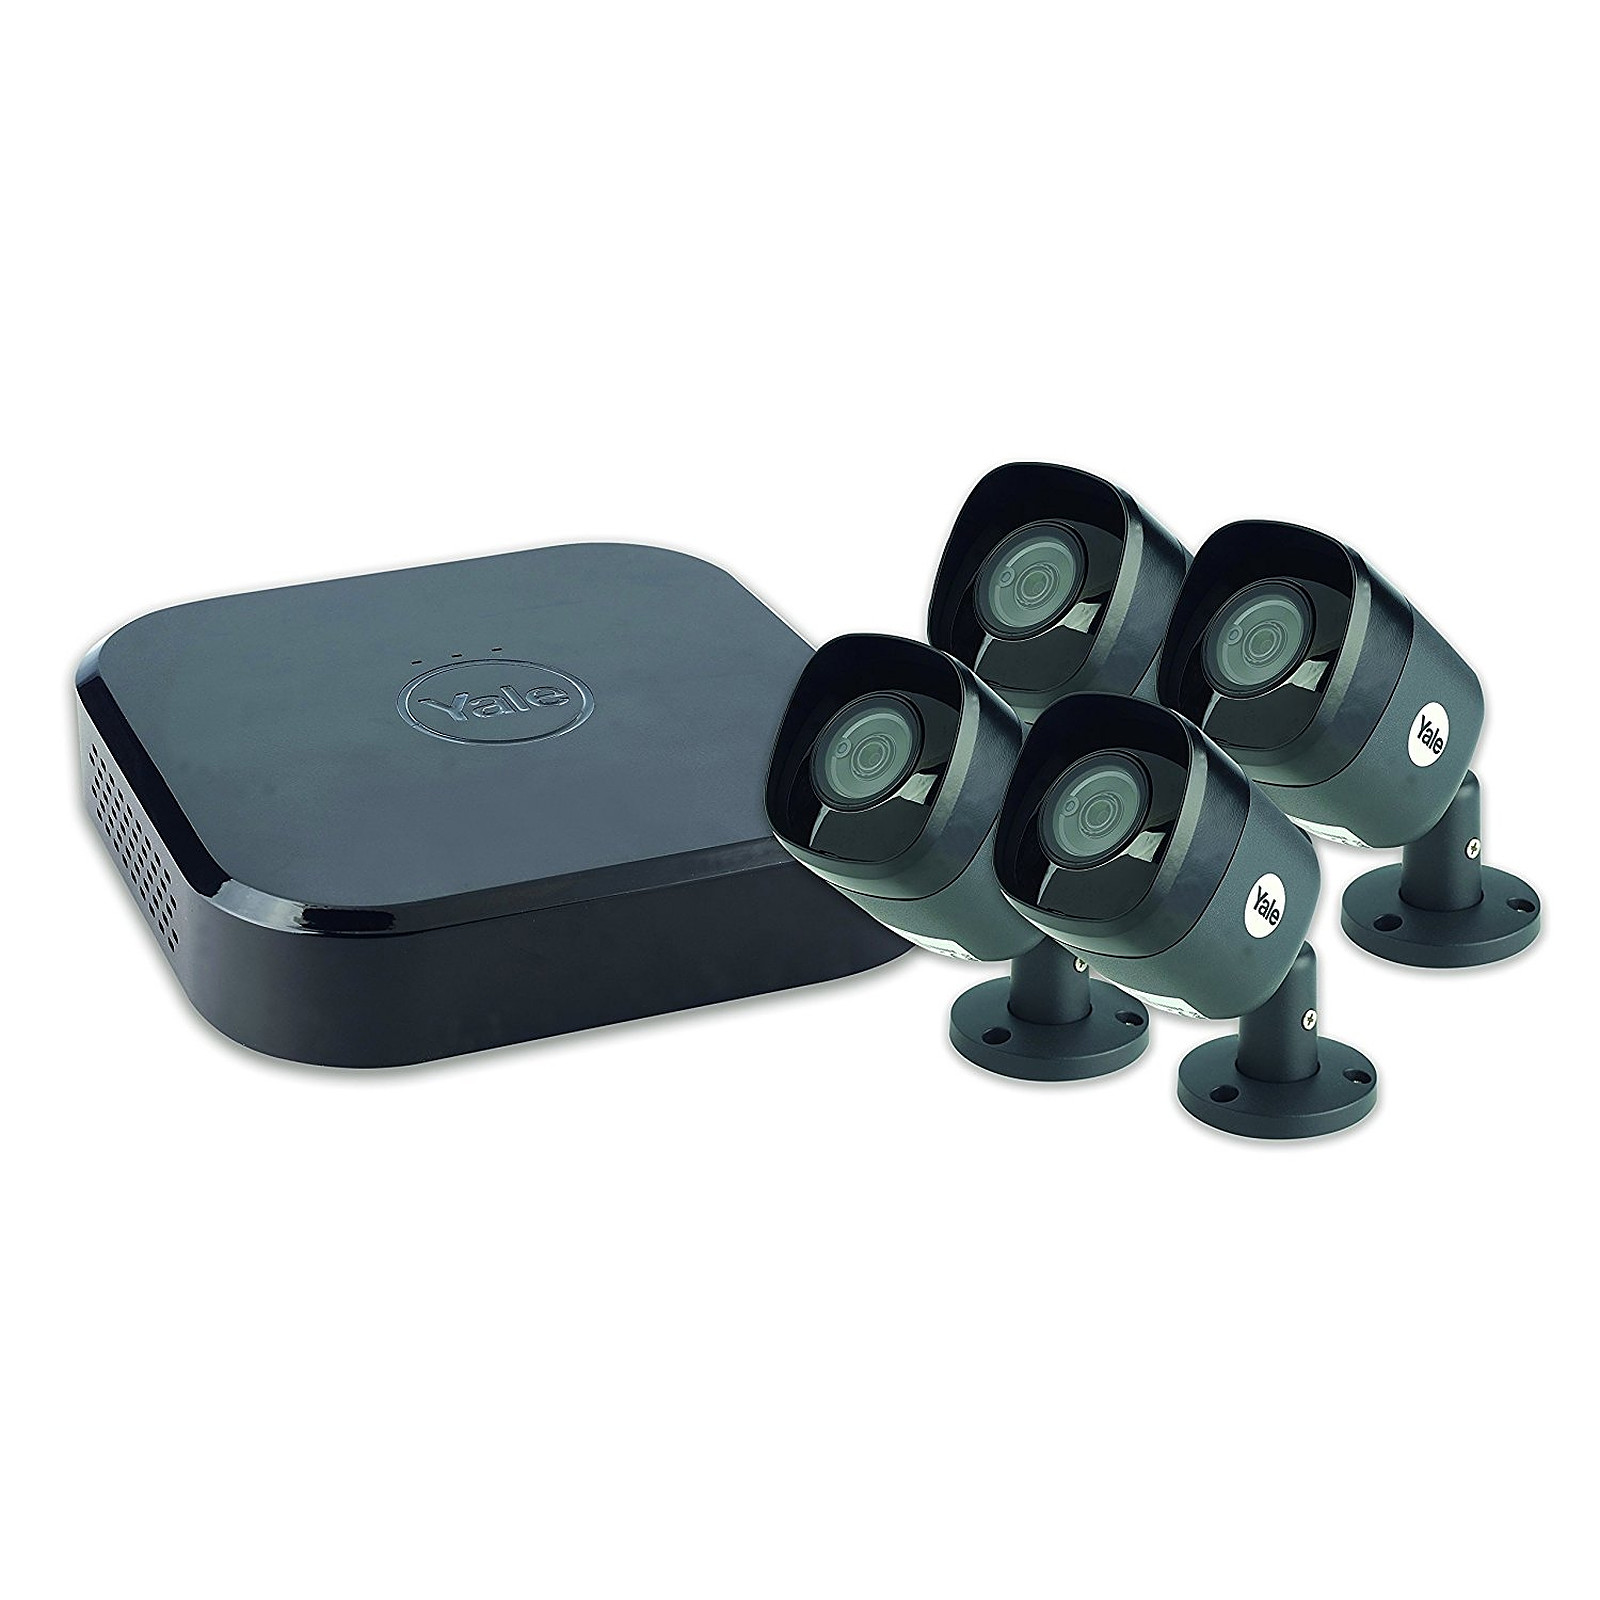 Yale - Kit videosurveillance connecte XL 4 cameras - Camera de surveillance Yale Smart Living